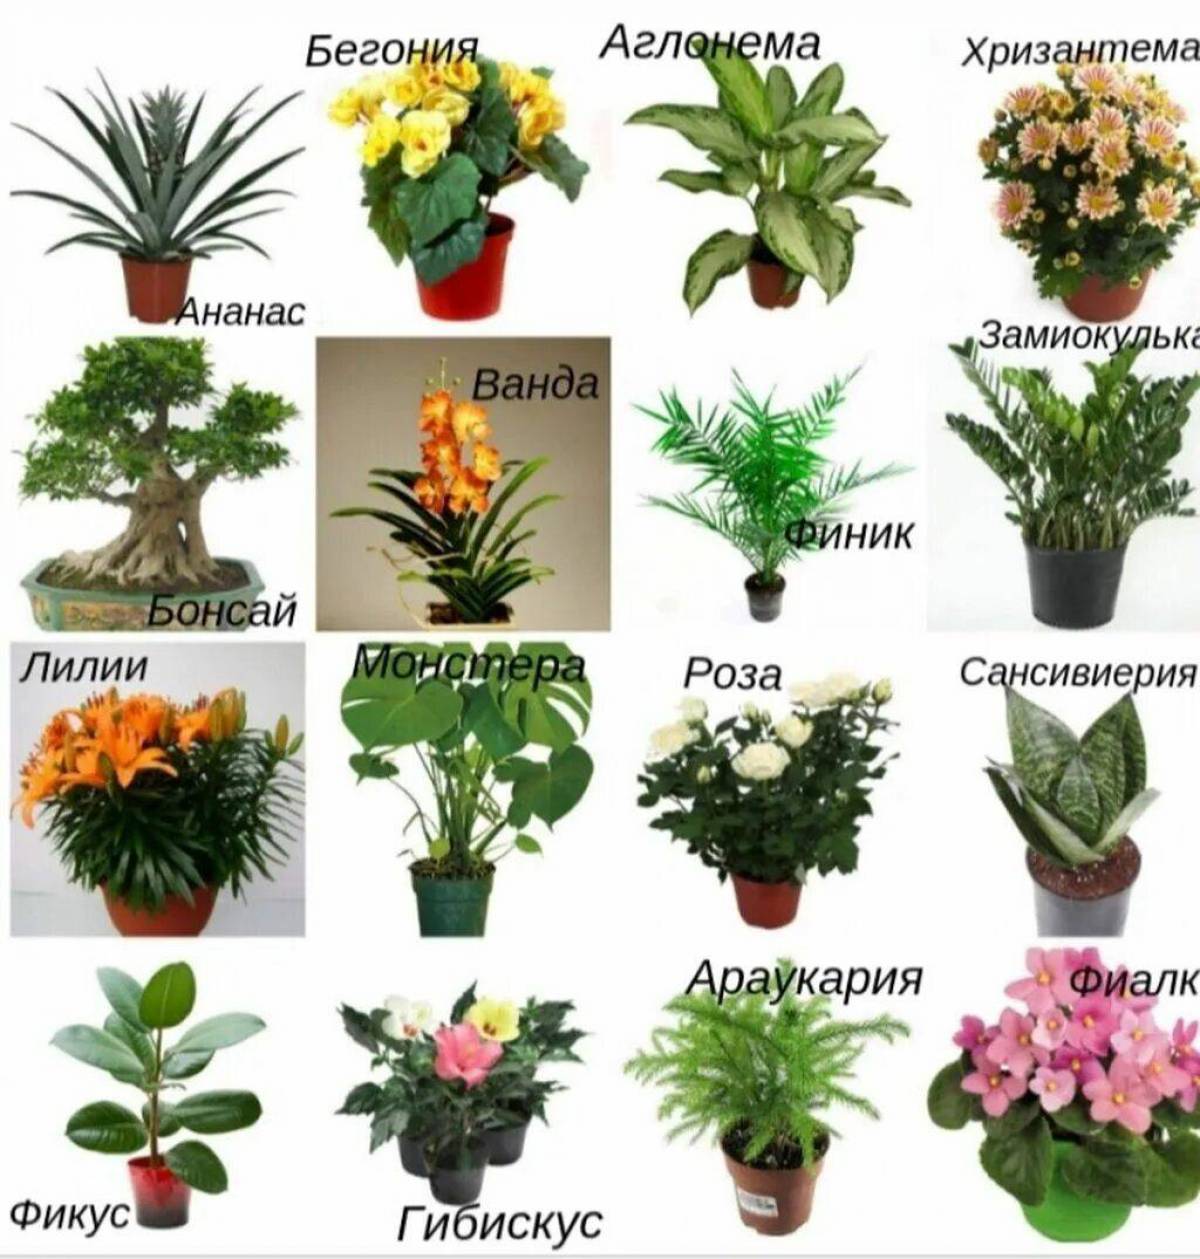 Цветы название найти комнатные растения. Комнатные цветы с названиями. Комнатные растения названия. Название домашних цветов. Название комнатных цветков.